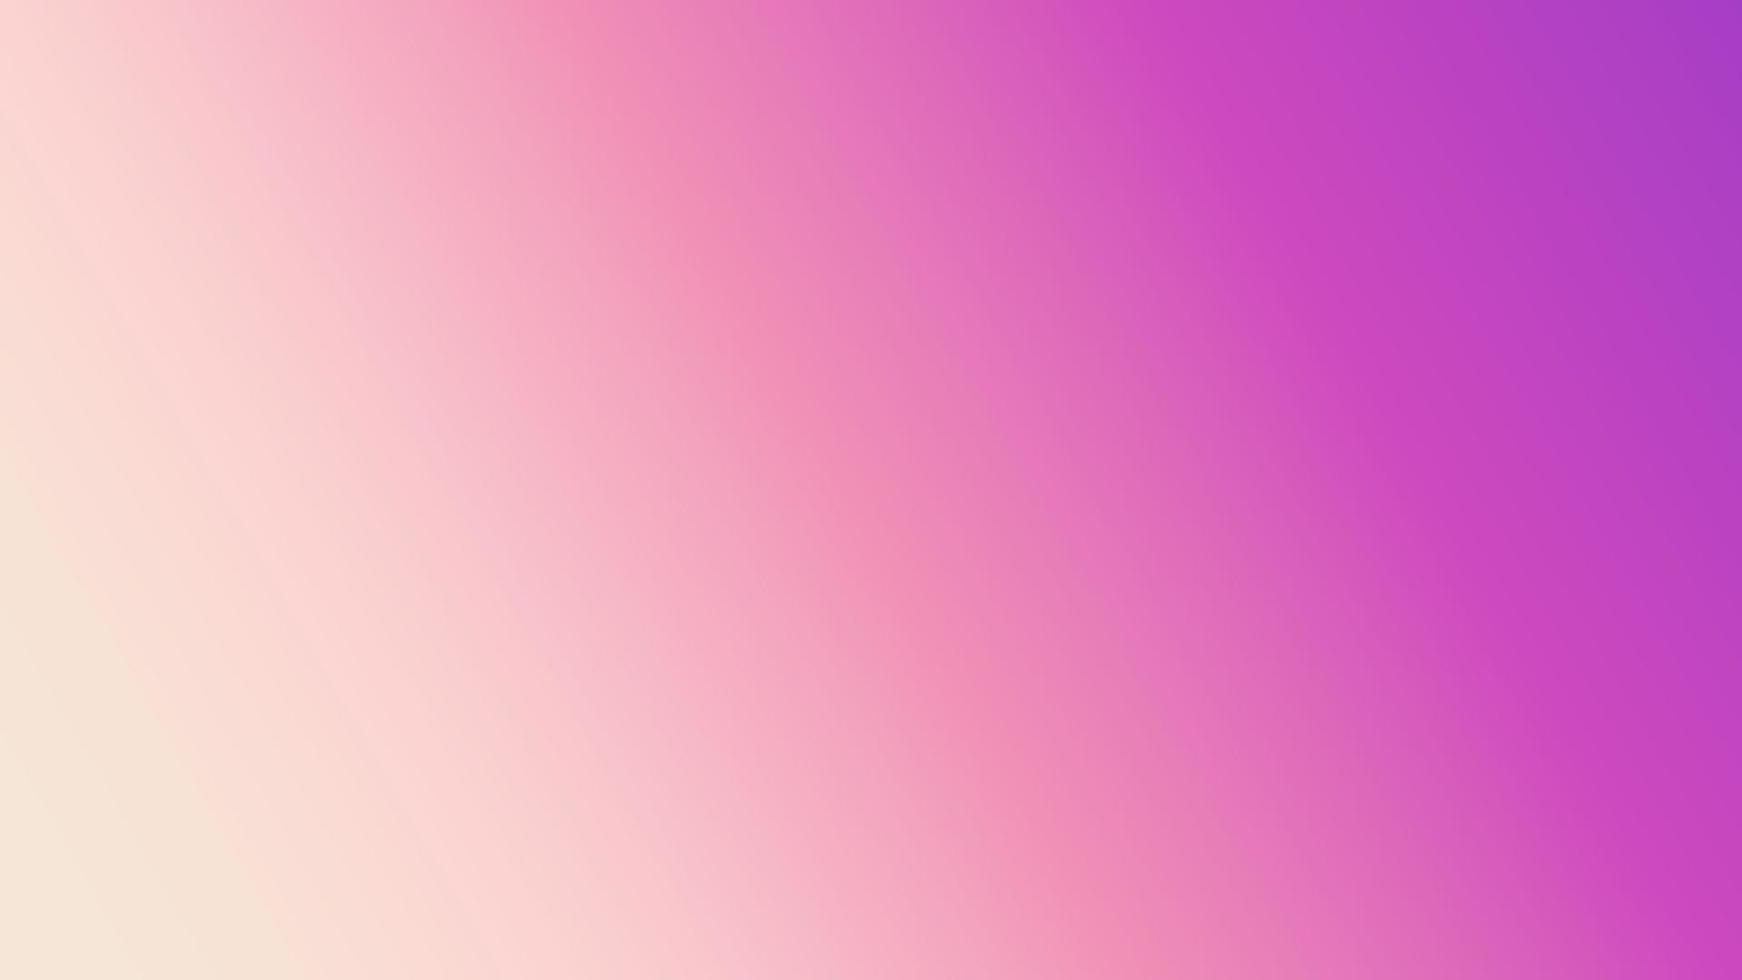 Bạn muốn có một latar belakang gradasi pink abstrak để sử dụng trong các thiết kế kỹ thuật số? Không cần phải tìm kiếm nữa, vì đây là bức ảnh hoàn hảo cho bạn. Mang đến cho bạn một thiết kế độc đáo với phong cách màu hồng gradient hoàn hảo để tăng tính thẩm mỹ.